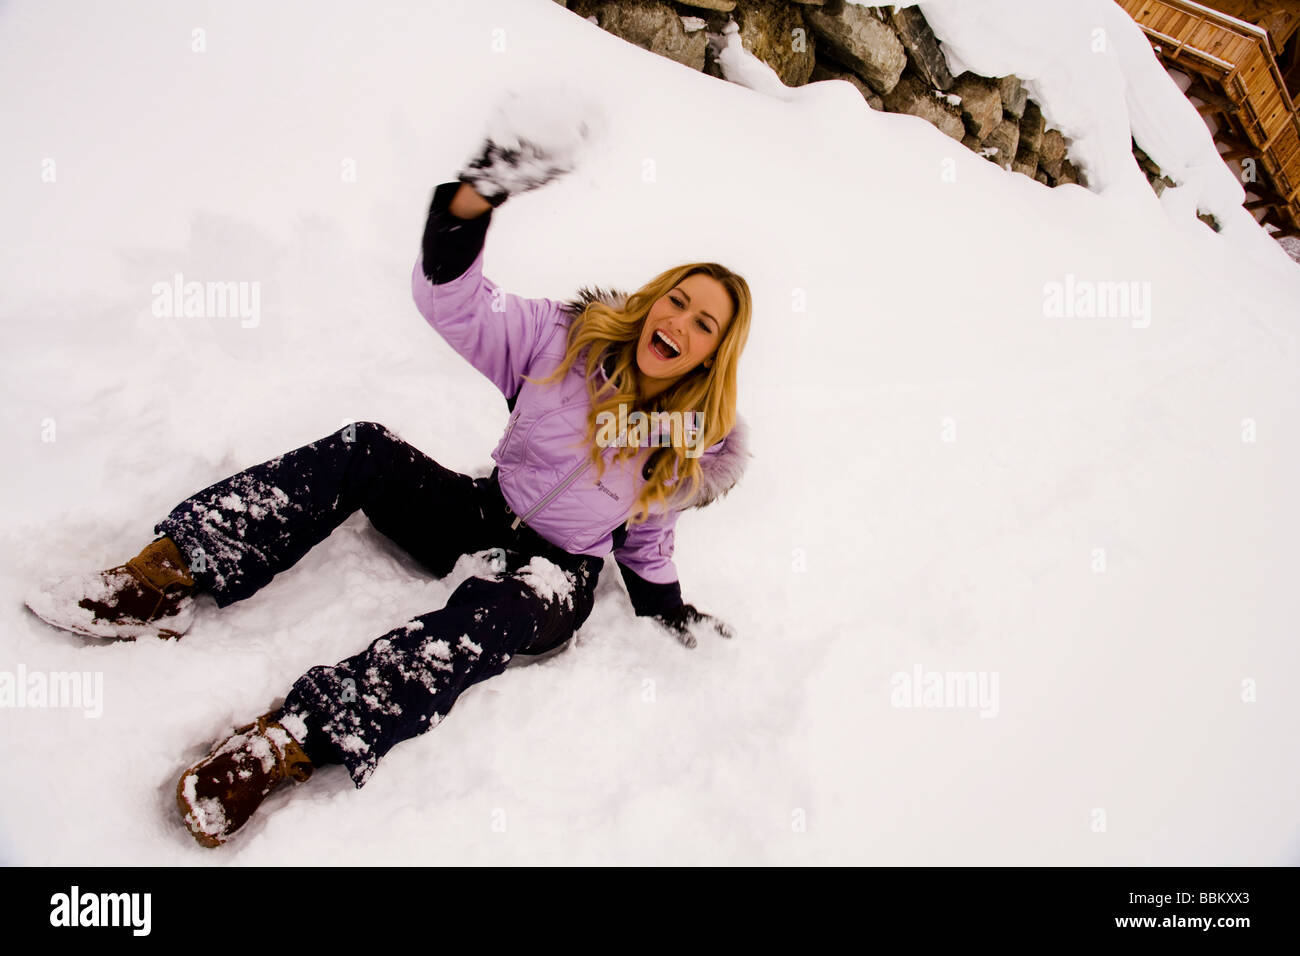 Eine junge, blonde Frau sitzt in den Schnee und wirft Schneebälle, die eine schöne Zeit. Stockfoto